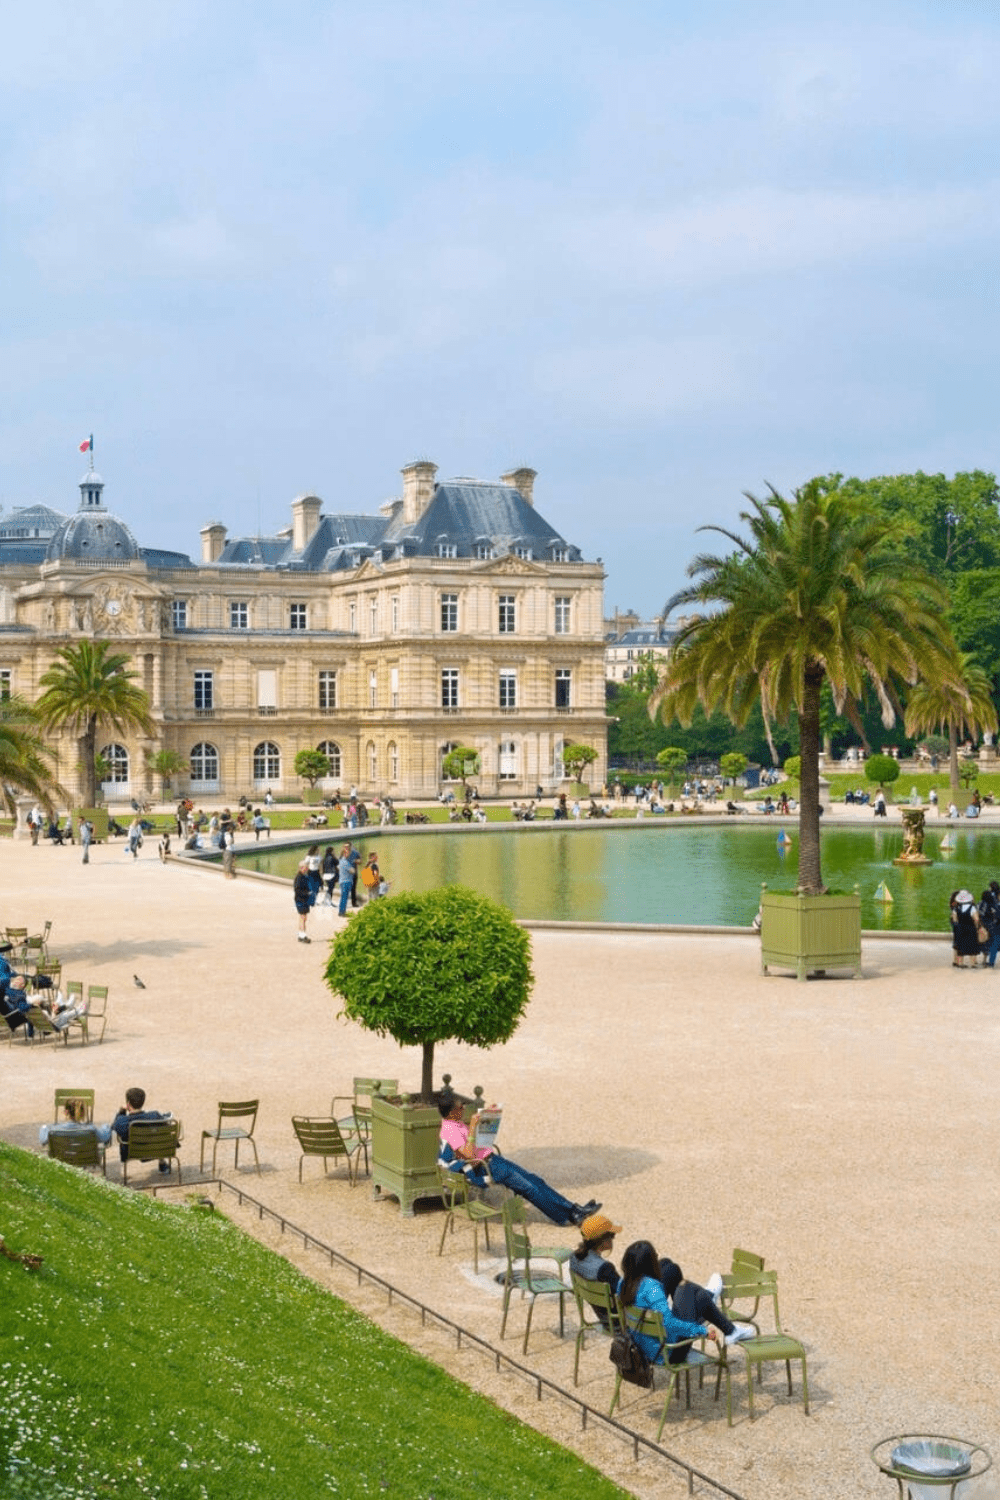 Luxembourg Gardens Paris: The Best Garden to Visit